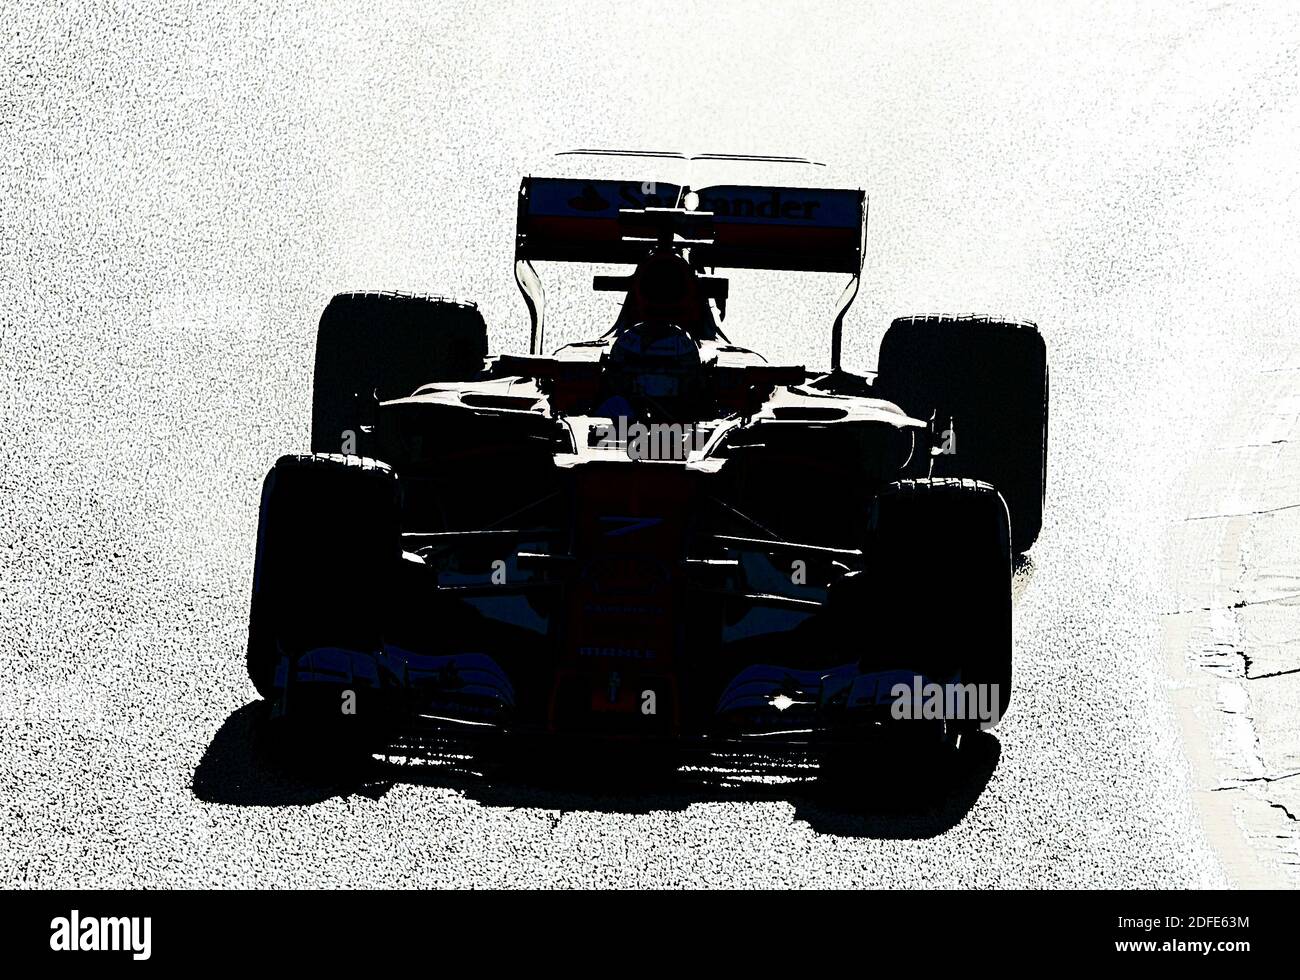 Formula One car racing Stock Photo